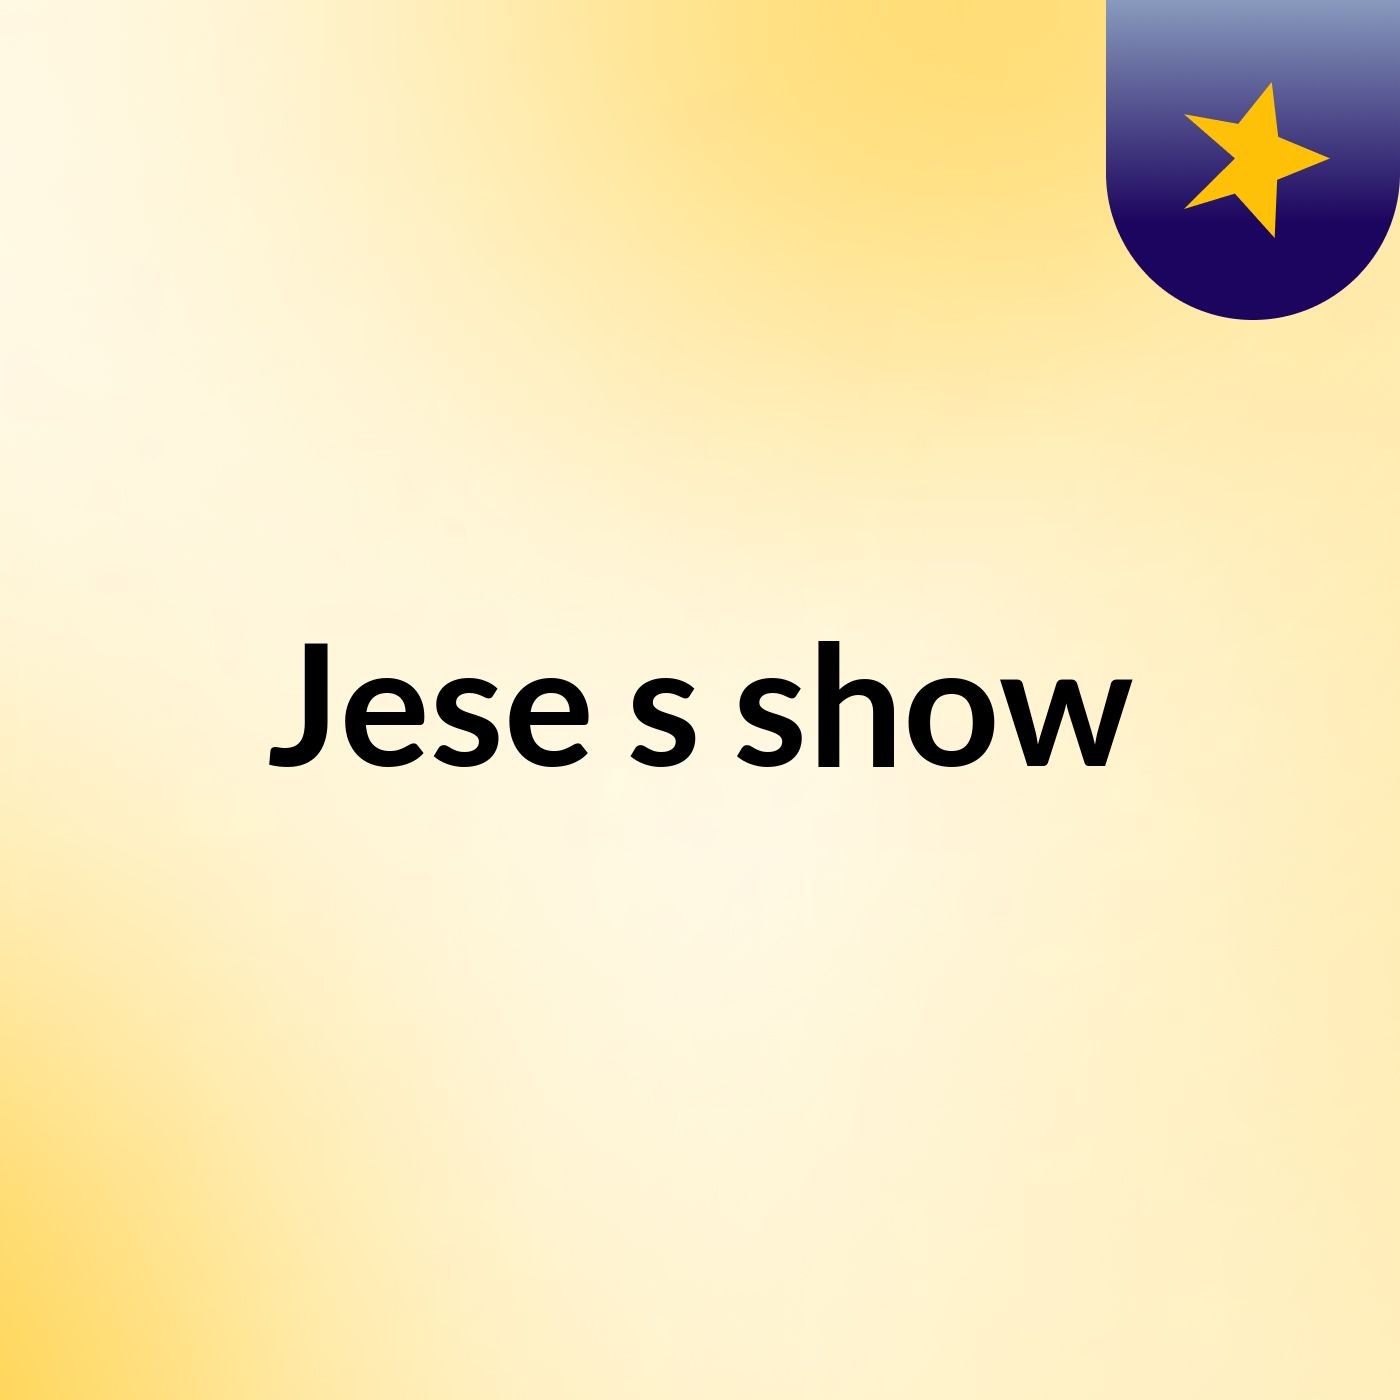 Jese's show